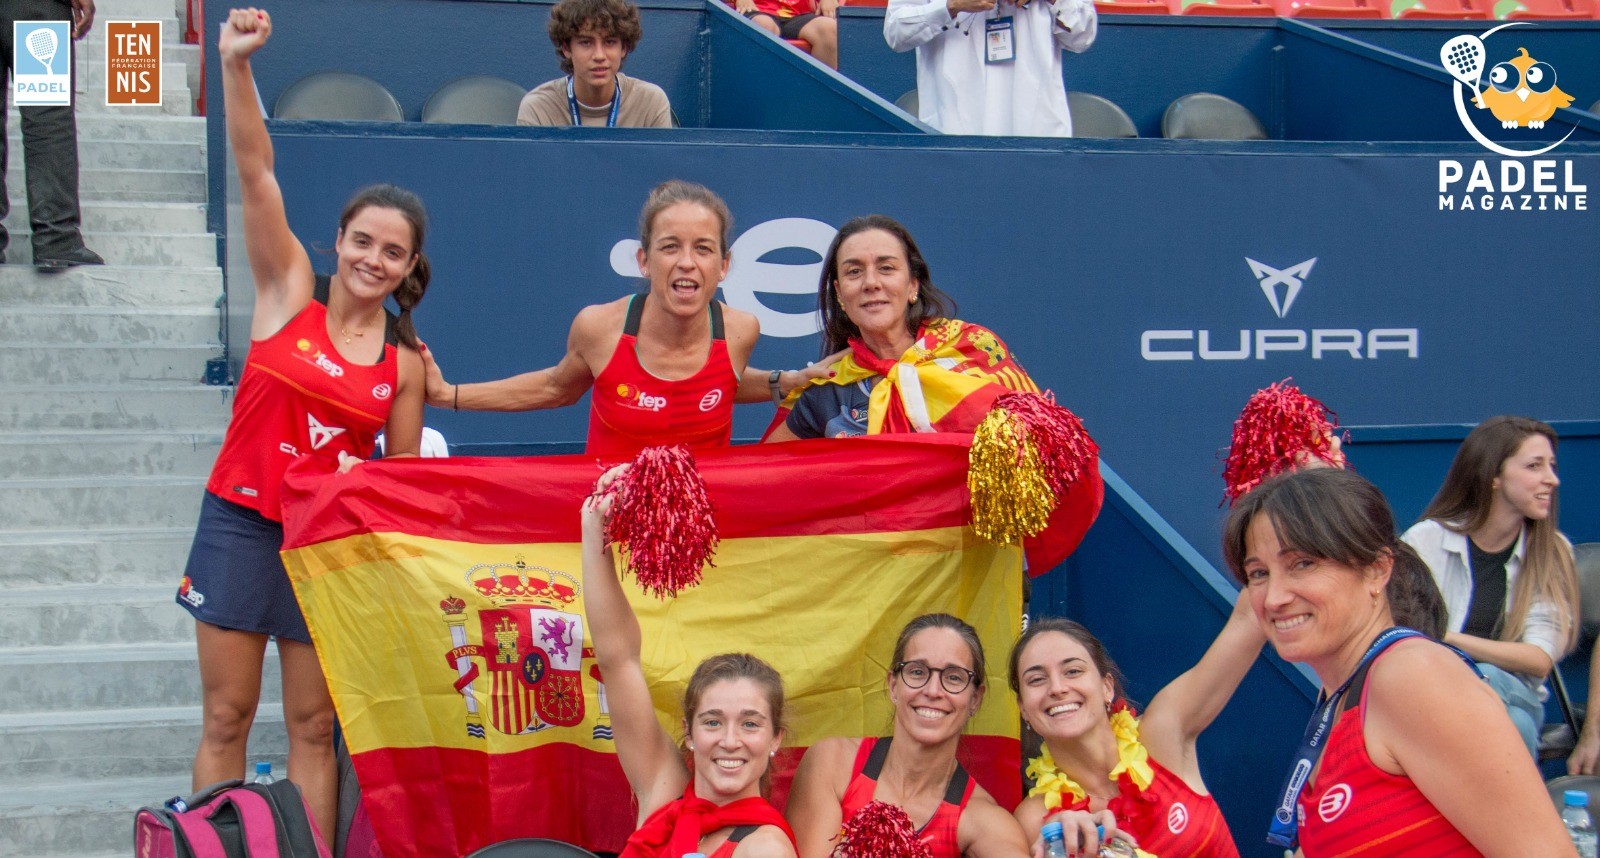 Le padel “Mangia” il tennis in Spagna